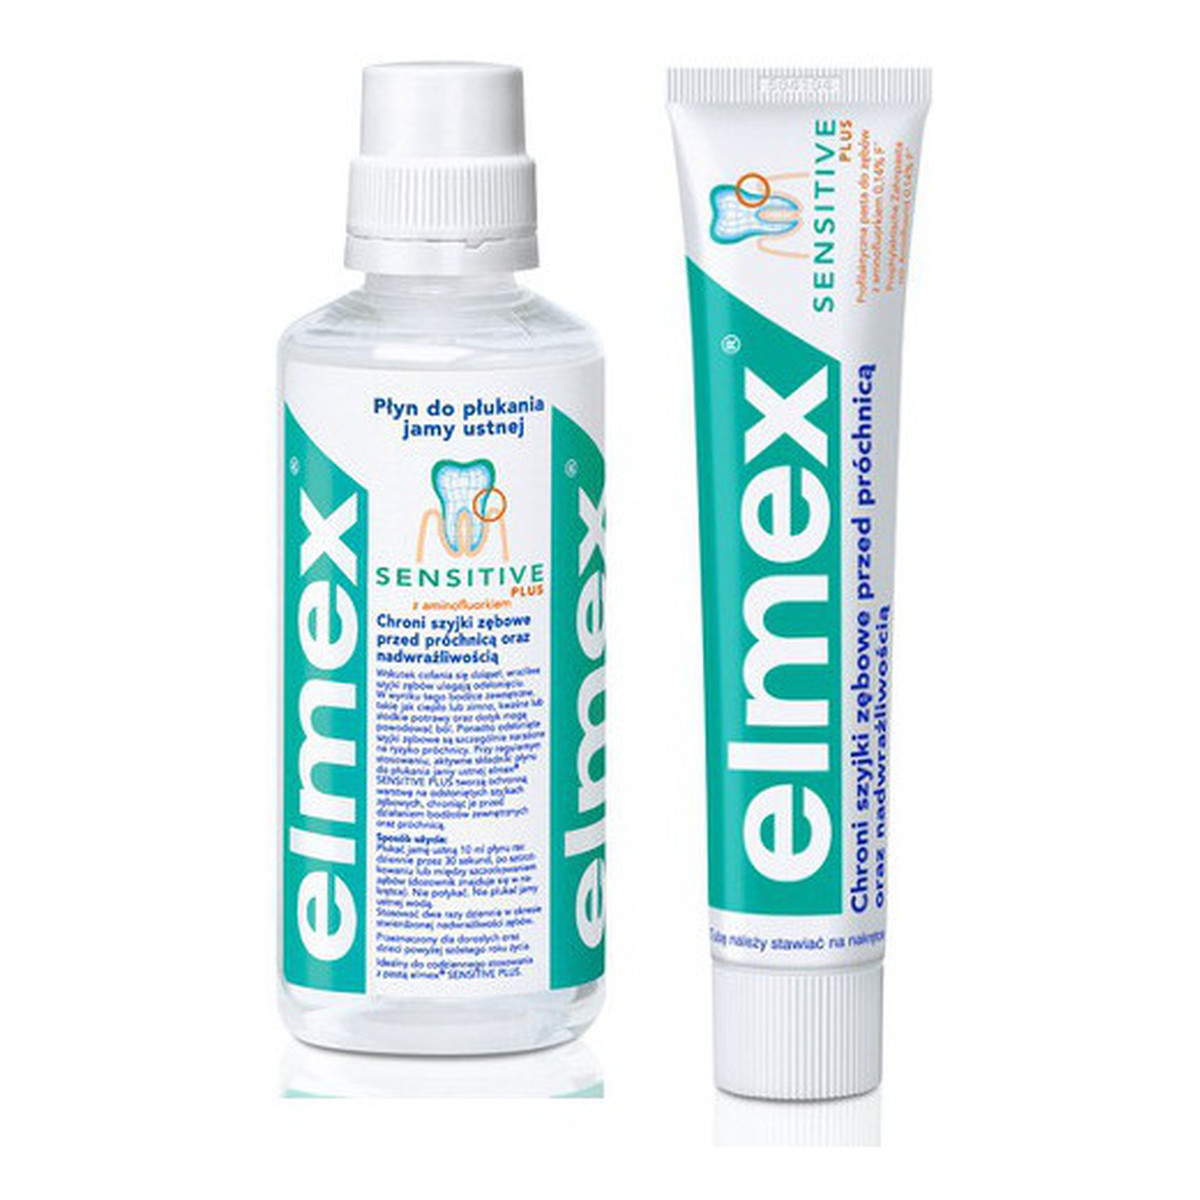 elmex Sensitive Zestaw: Pasta Do Zębów+Płyn Do Płukania Jamy Ustnej 475ml